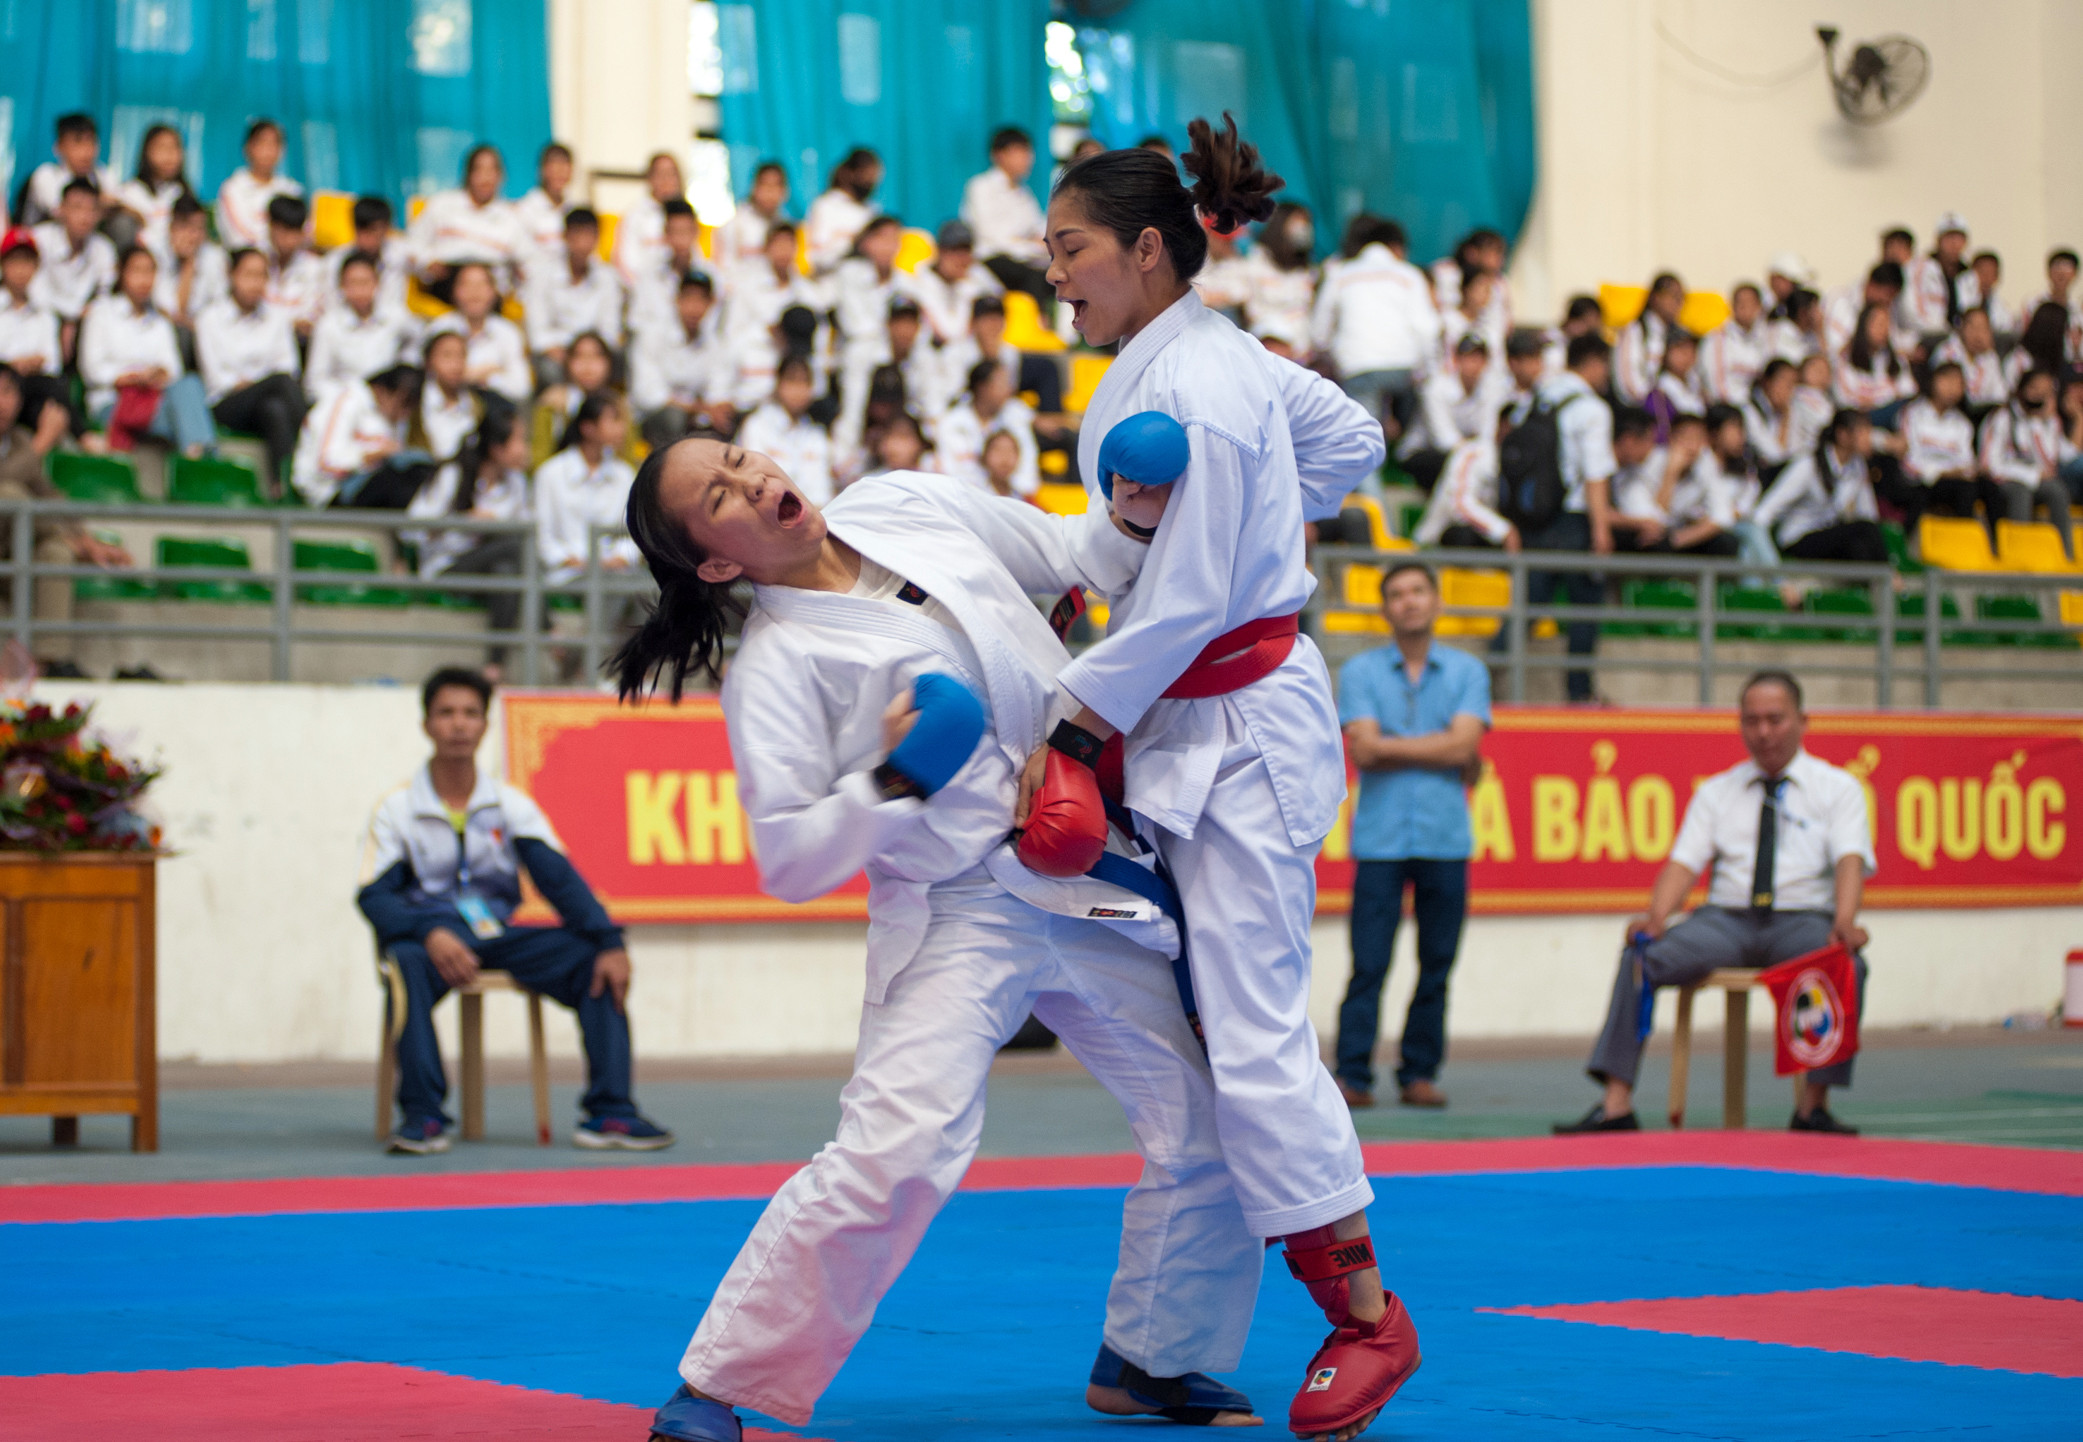 Thi đấu Karatedo tại Đại hội TDTD tỉnh Nghệ An năm 2018. Ảnh: Thành Cường